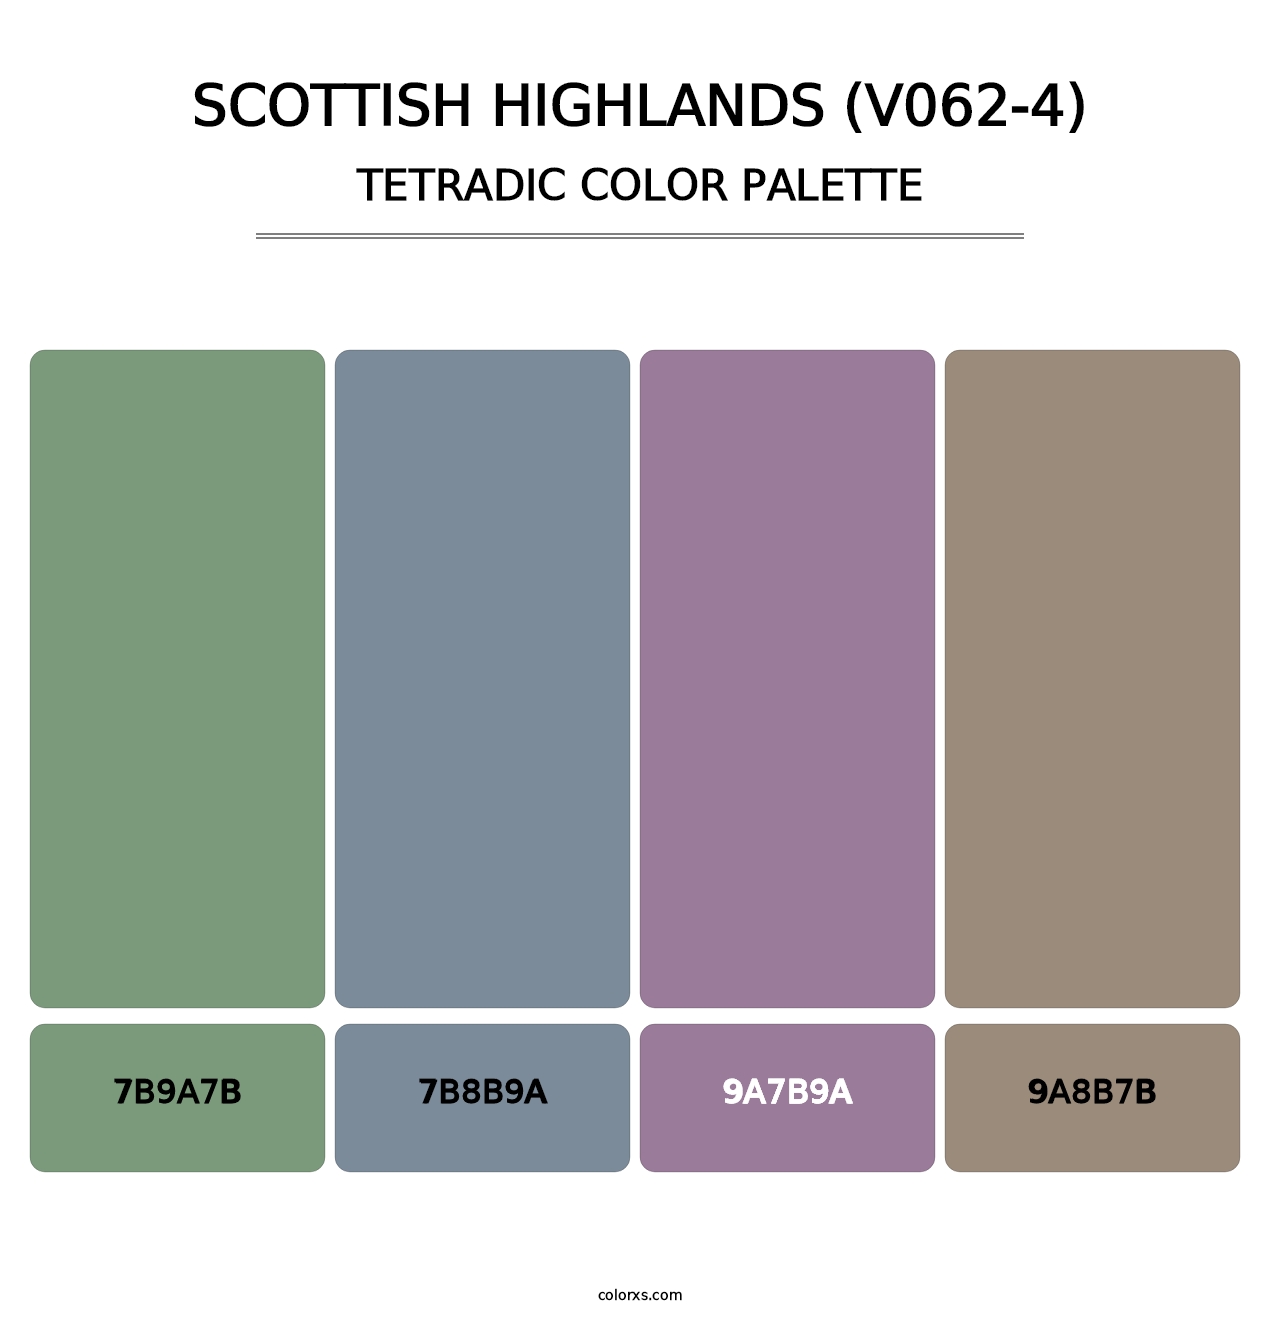 Scottish Highlands (V062-4) - Tetradic Color Palette